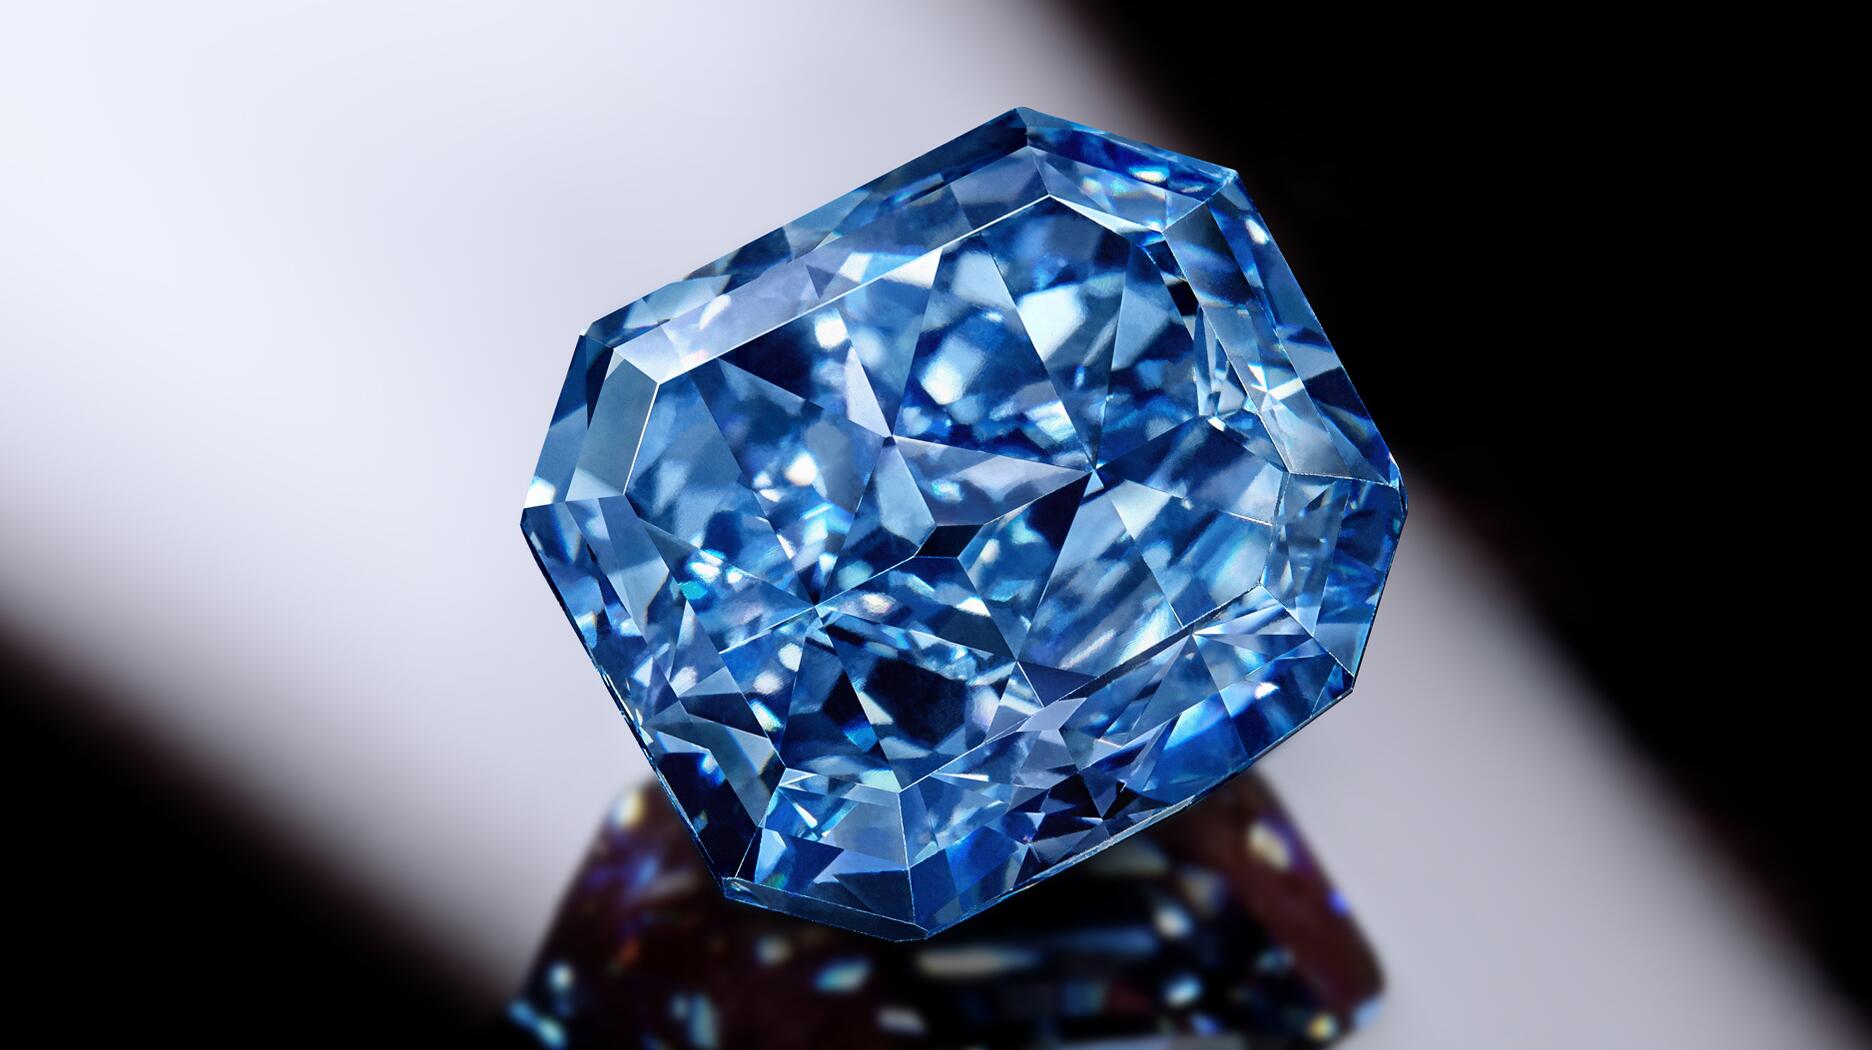 Infinite Blue diamond 